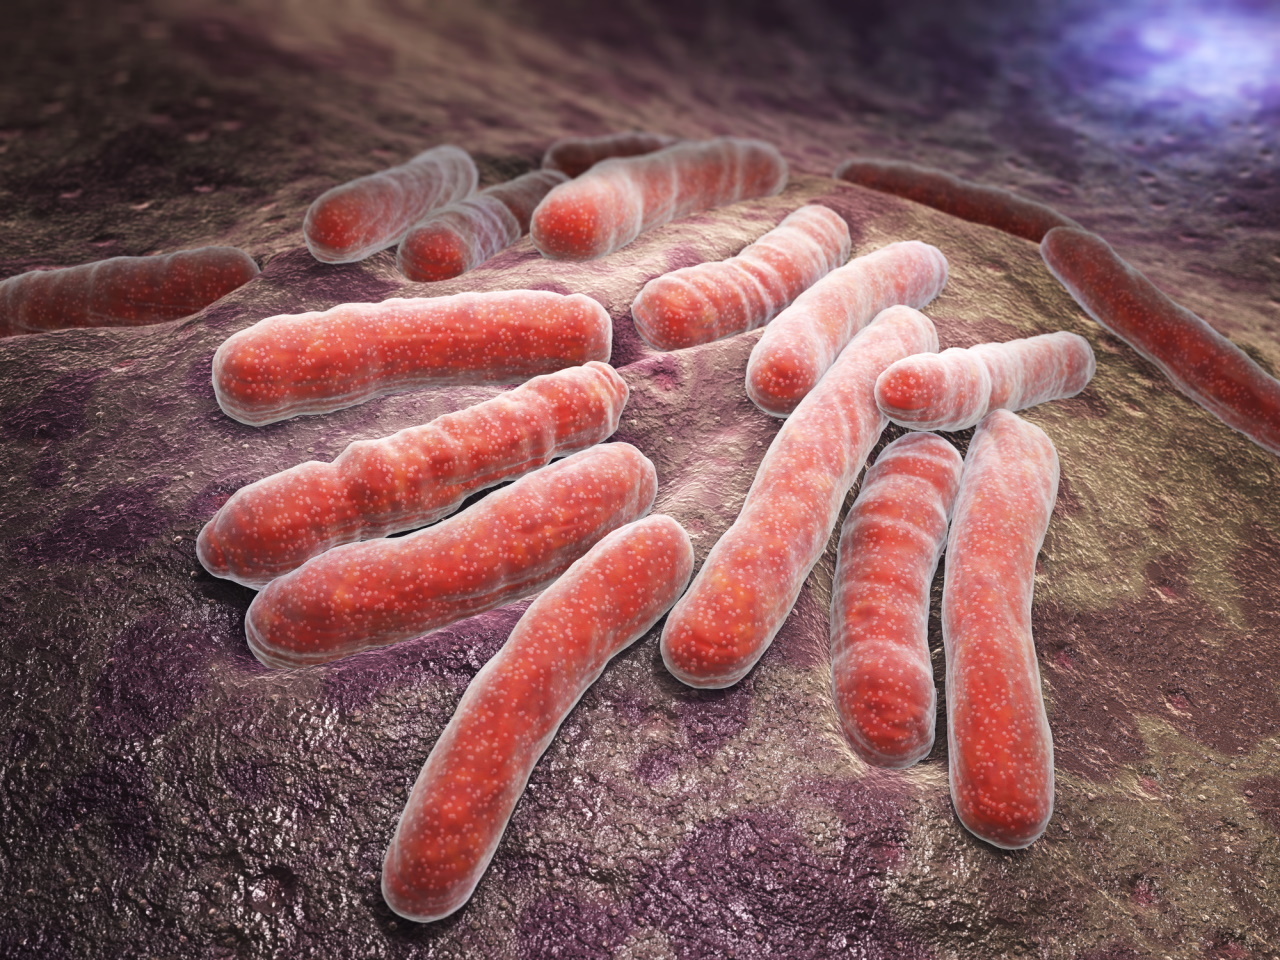 <p><strong>Бацил на Кох</strong></p>

<p><span>Mycobacterium tuberculosis е вид патогенни бактерии от семейство Mycobacteriaceae и причинителят на туберкулозата. За първи път открит през 1882 г. от Робърт Кох,</span></p>